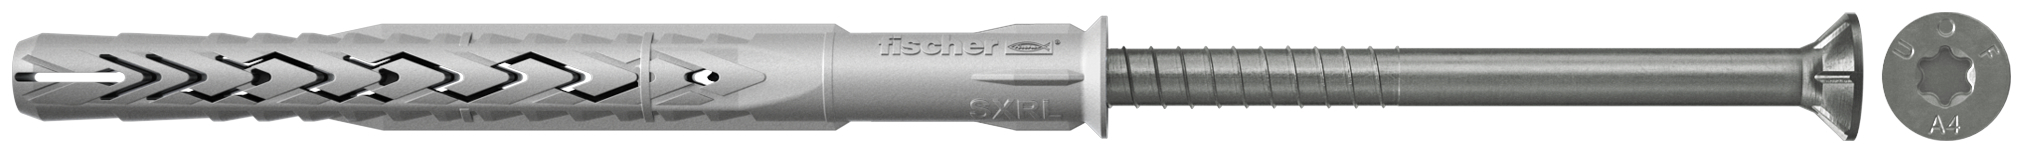 fischer Tasselli prolungati SXRL 10X160 T A4 (1 Pz.) Tassello prolungato in nylon con marcatura CE con vite premontata in acciaio inox A4, T.S.P. impronta torx.